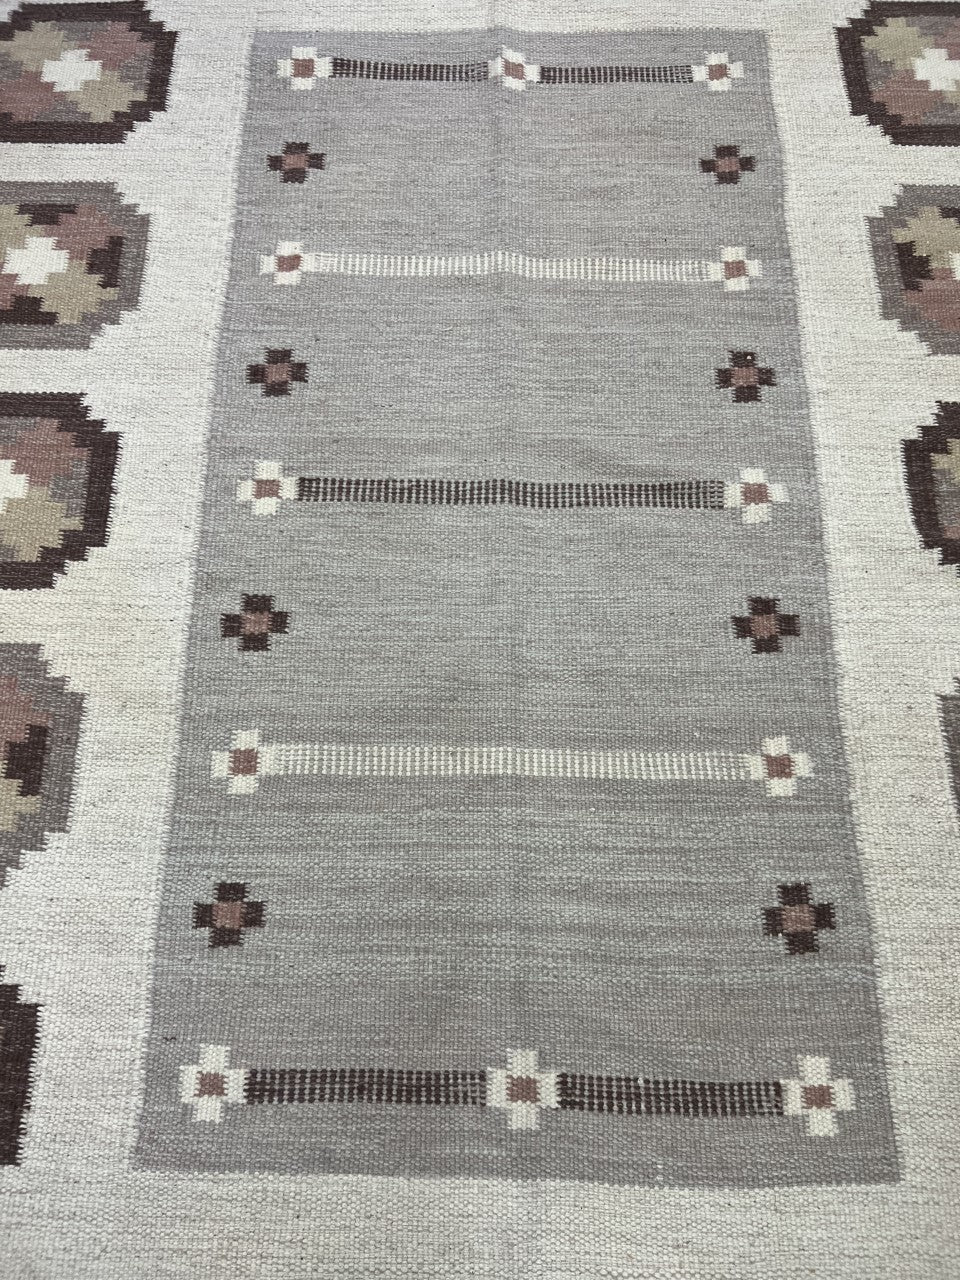 Stunning Swedish Kilim decorative rug